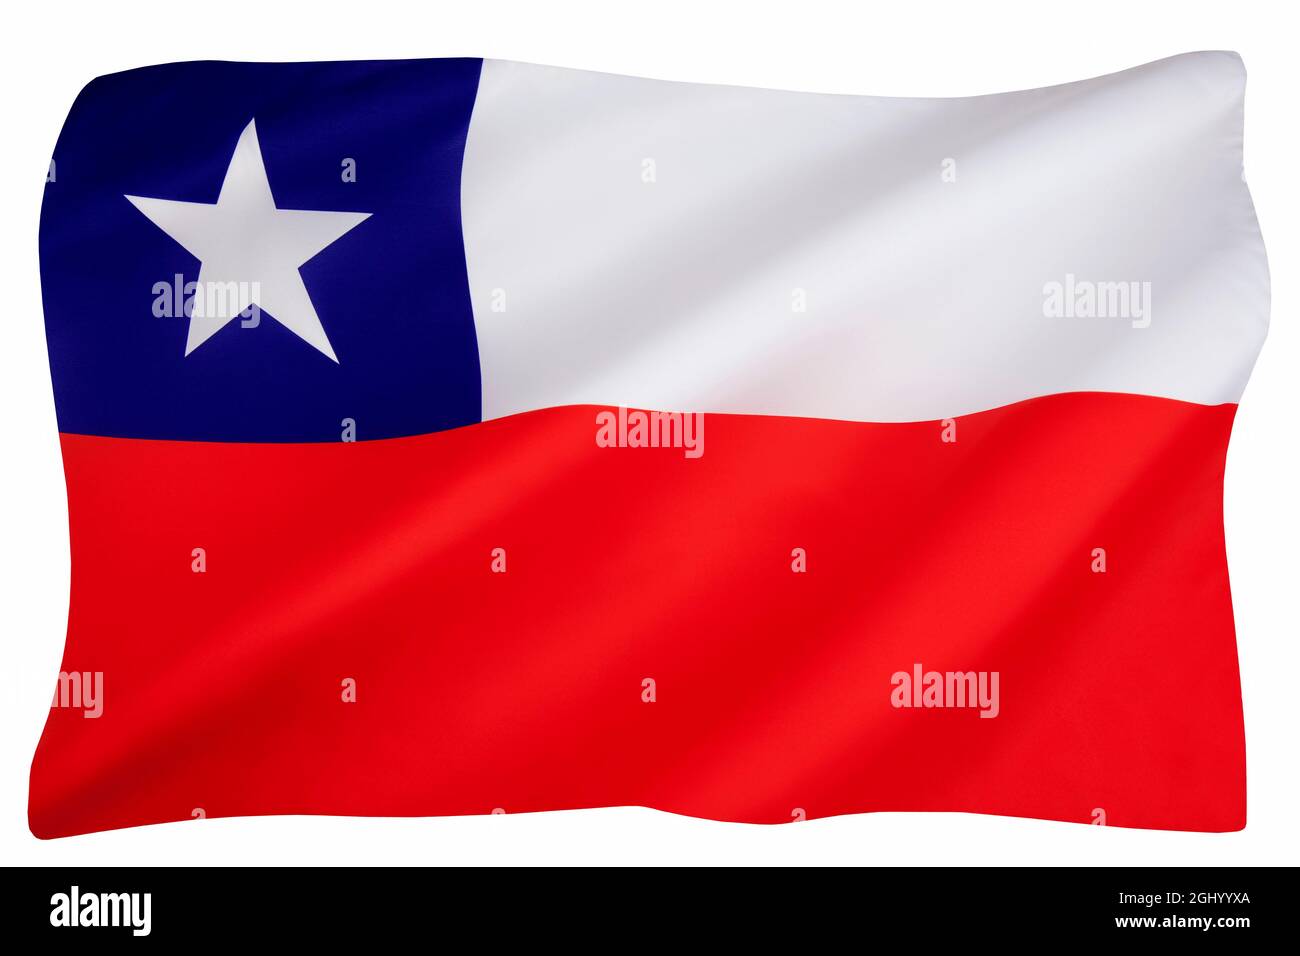 Die Nationalflagge der Republik Chile - angenommen am 18. Oktober 1817. Isoliert auf Weiß zum Ausschneiden. Stockfoto